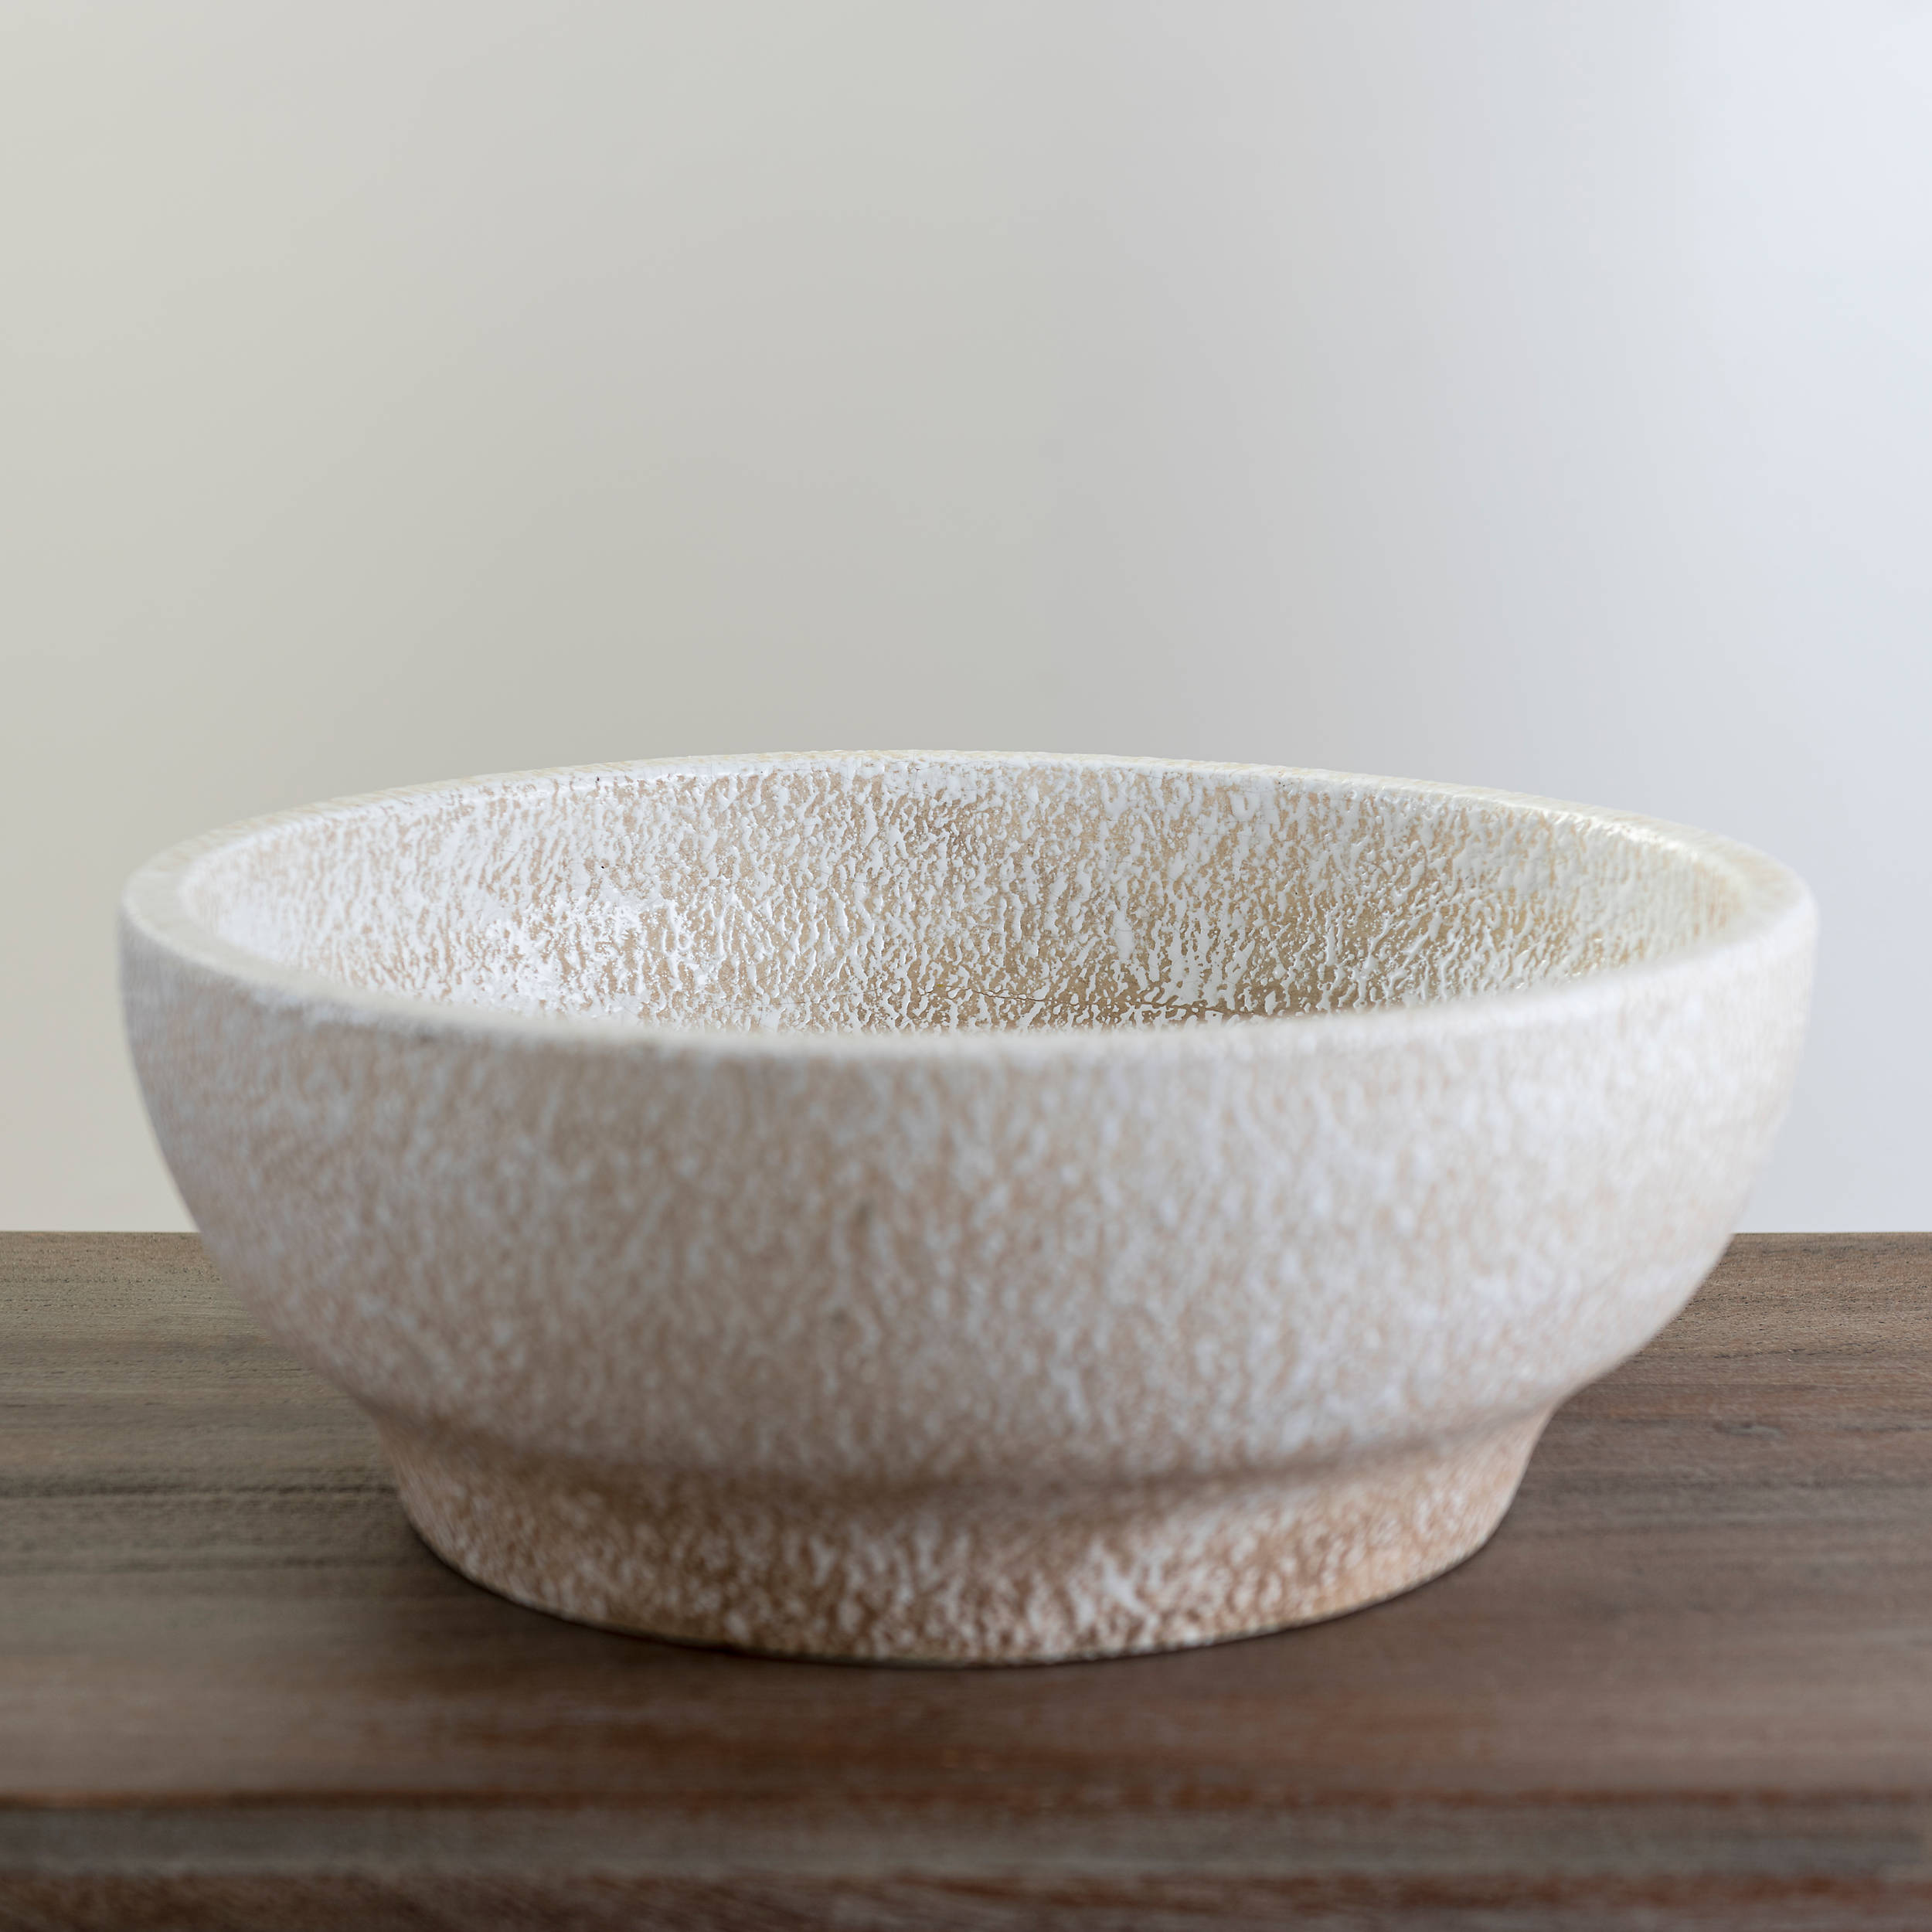 Shop White Terracotta Bowl from Kirkland's on Openhaus